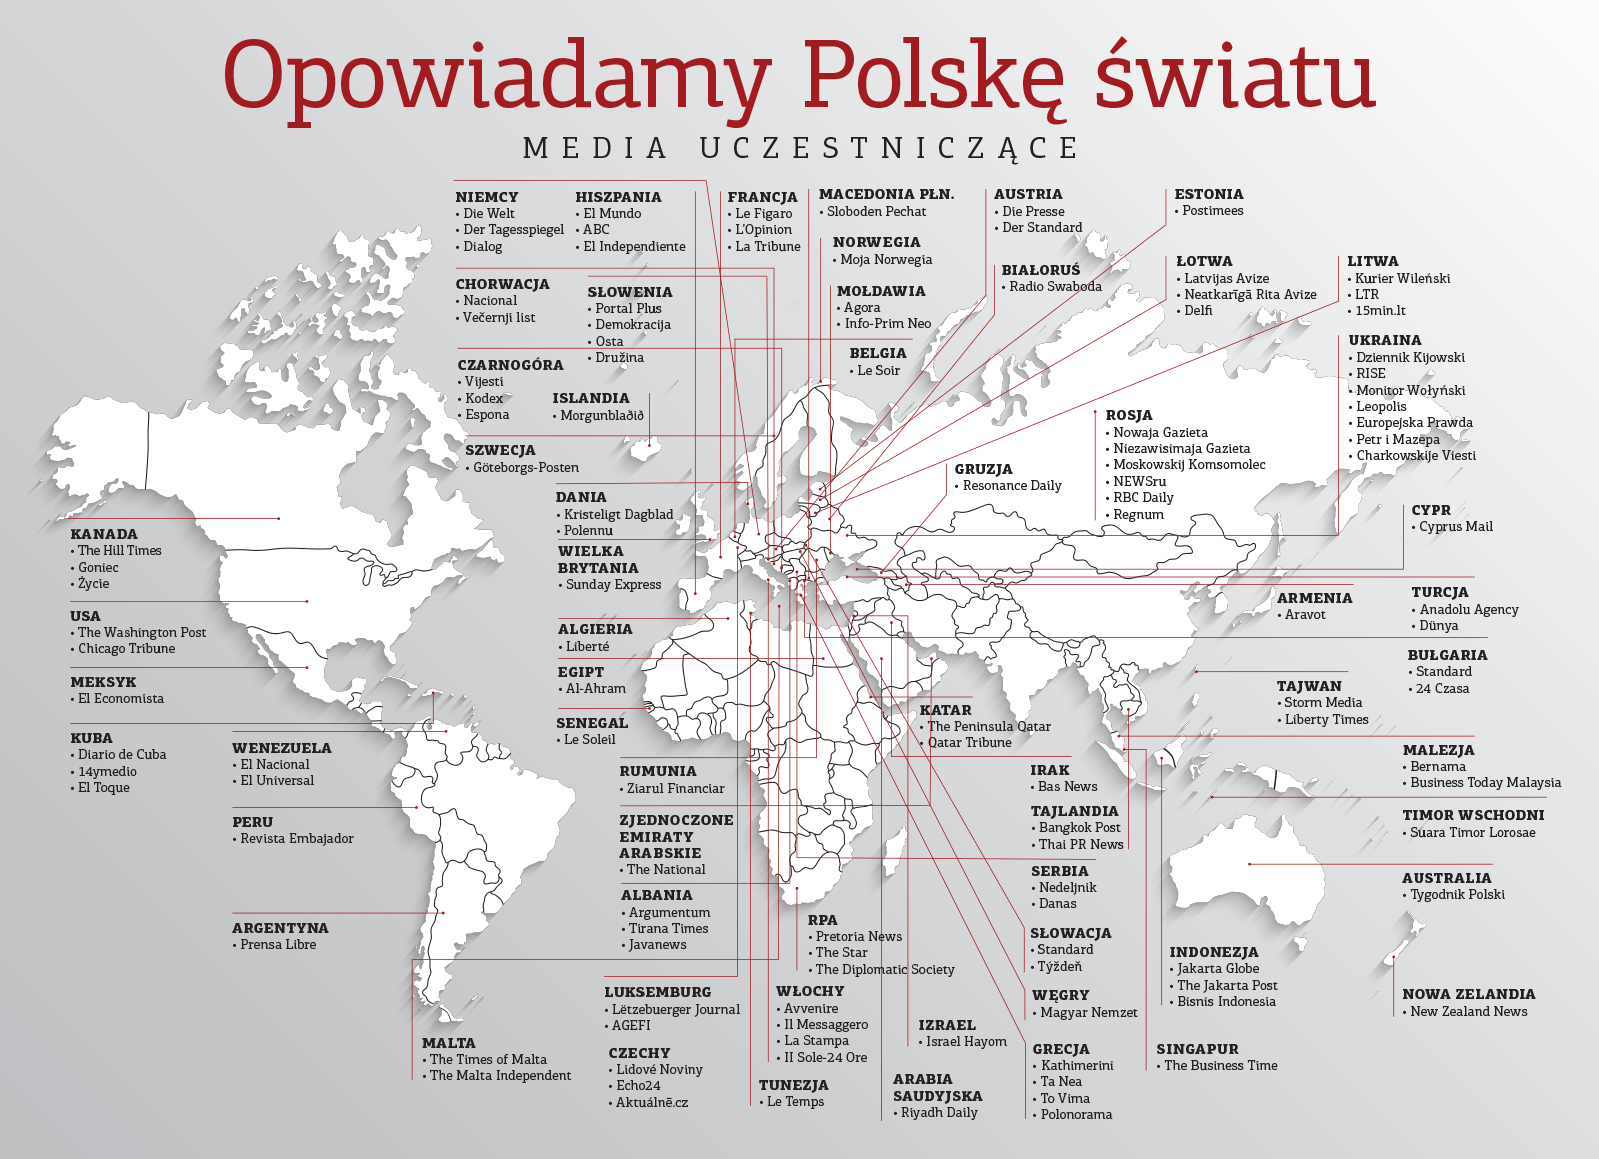 opowiadamu Polske swiatu